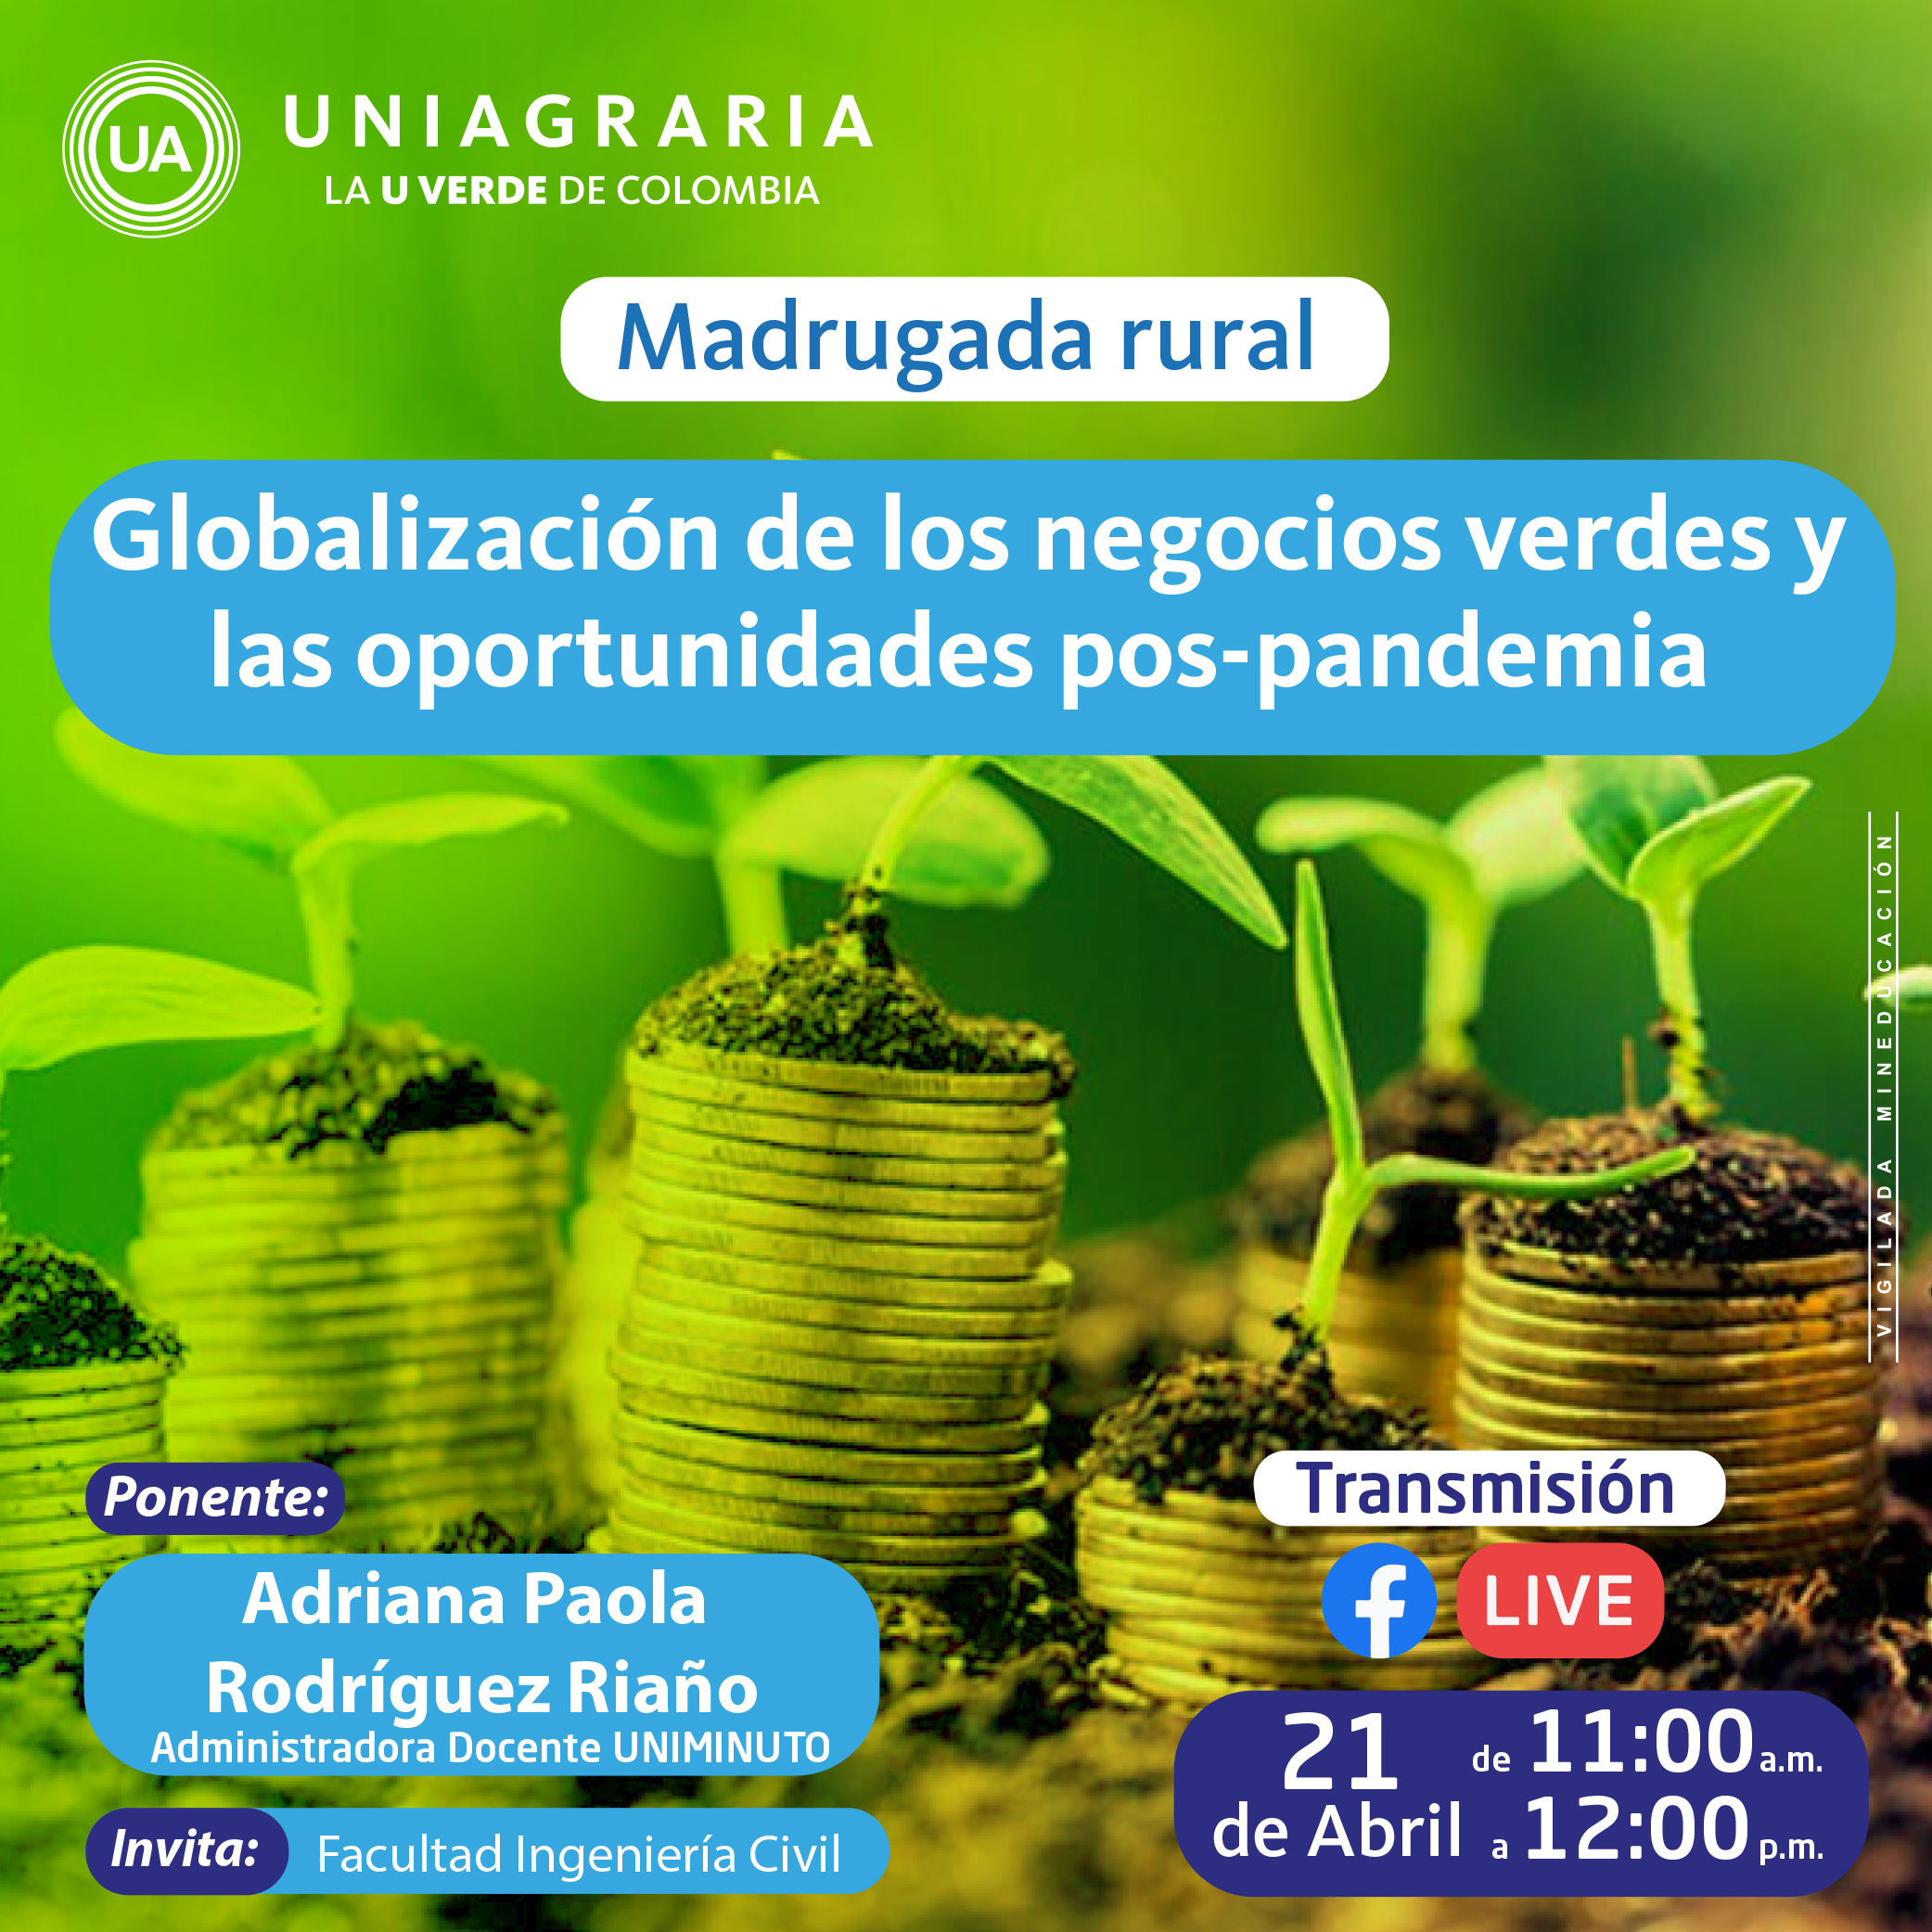 Madrugada rural: Globalización de los negocios verdes y oportunidades pos-pandemia